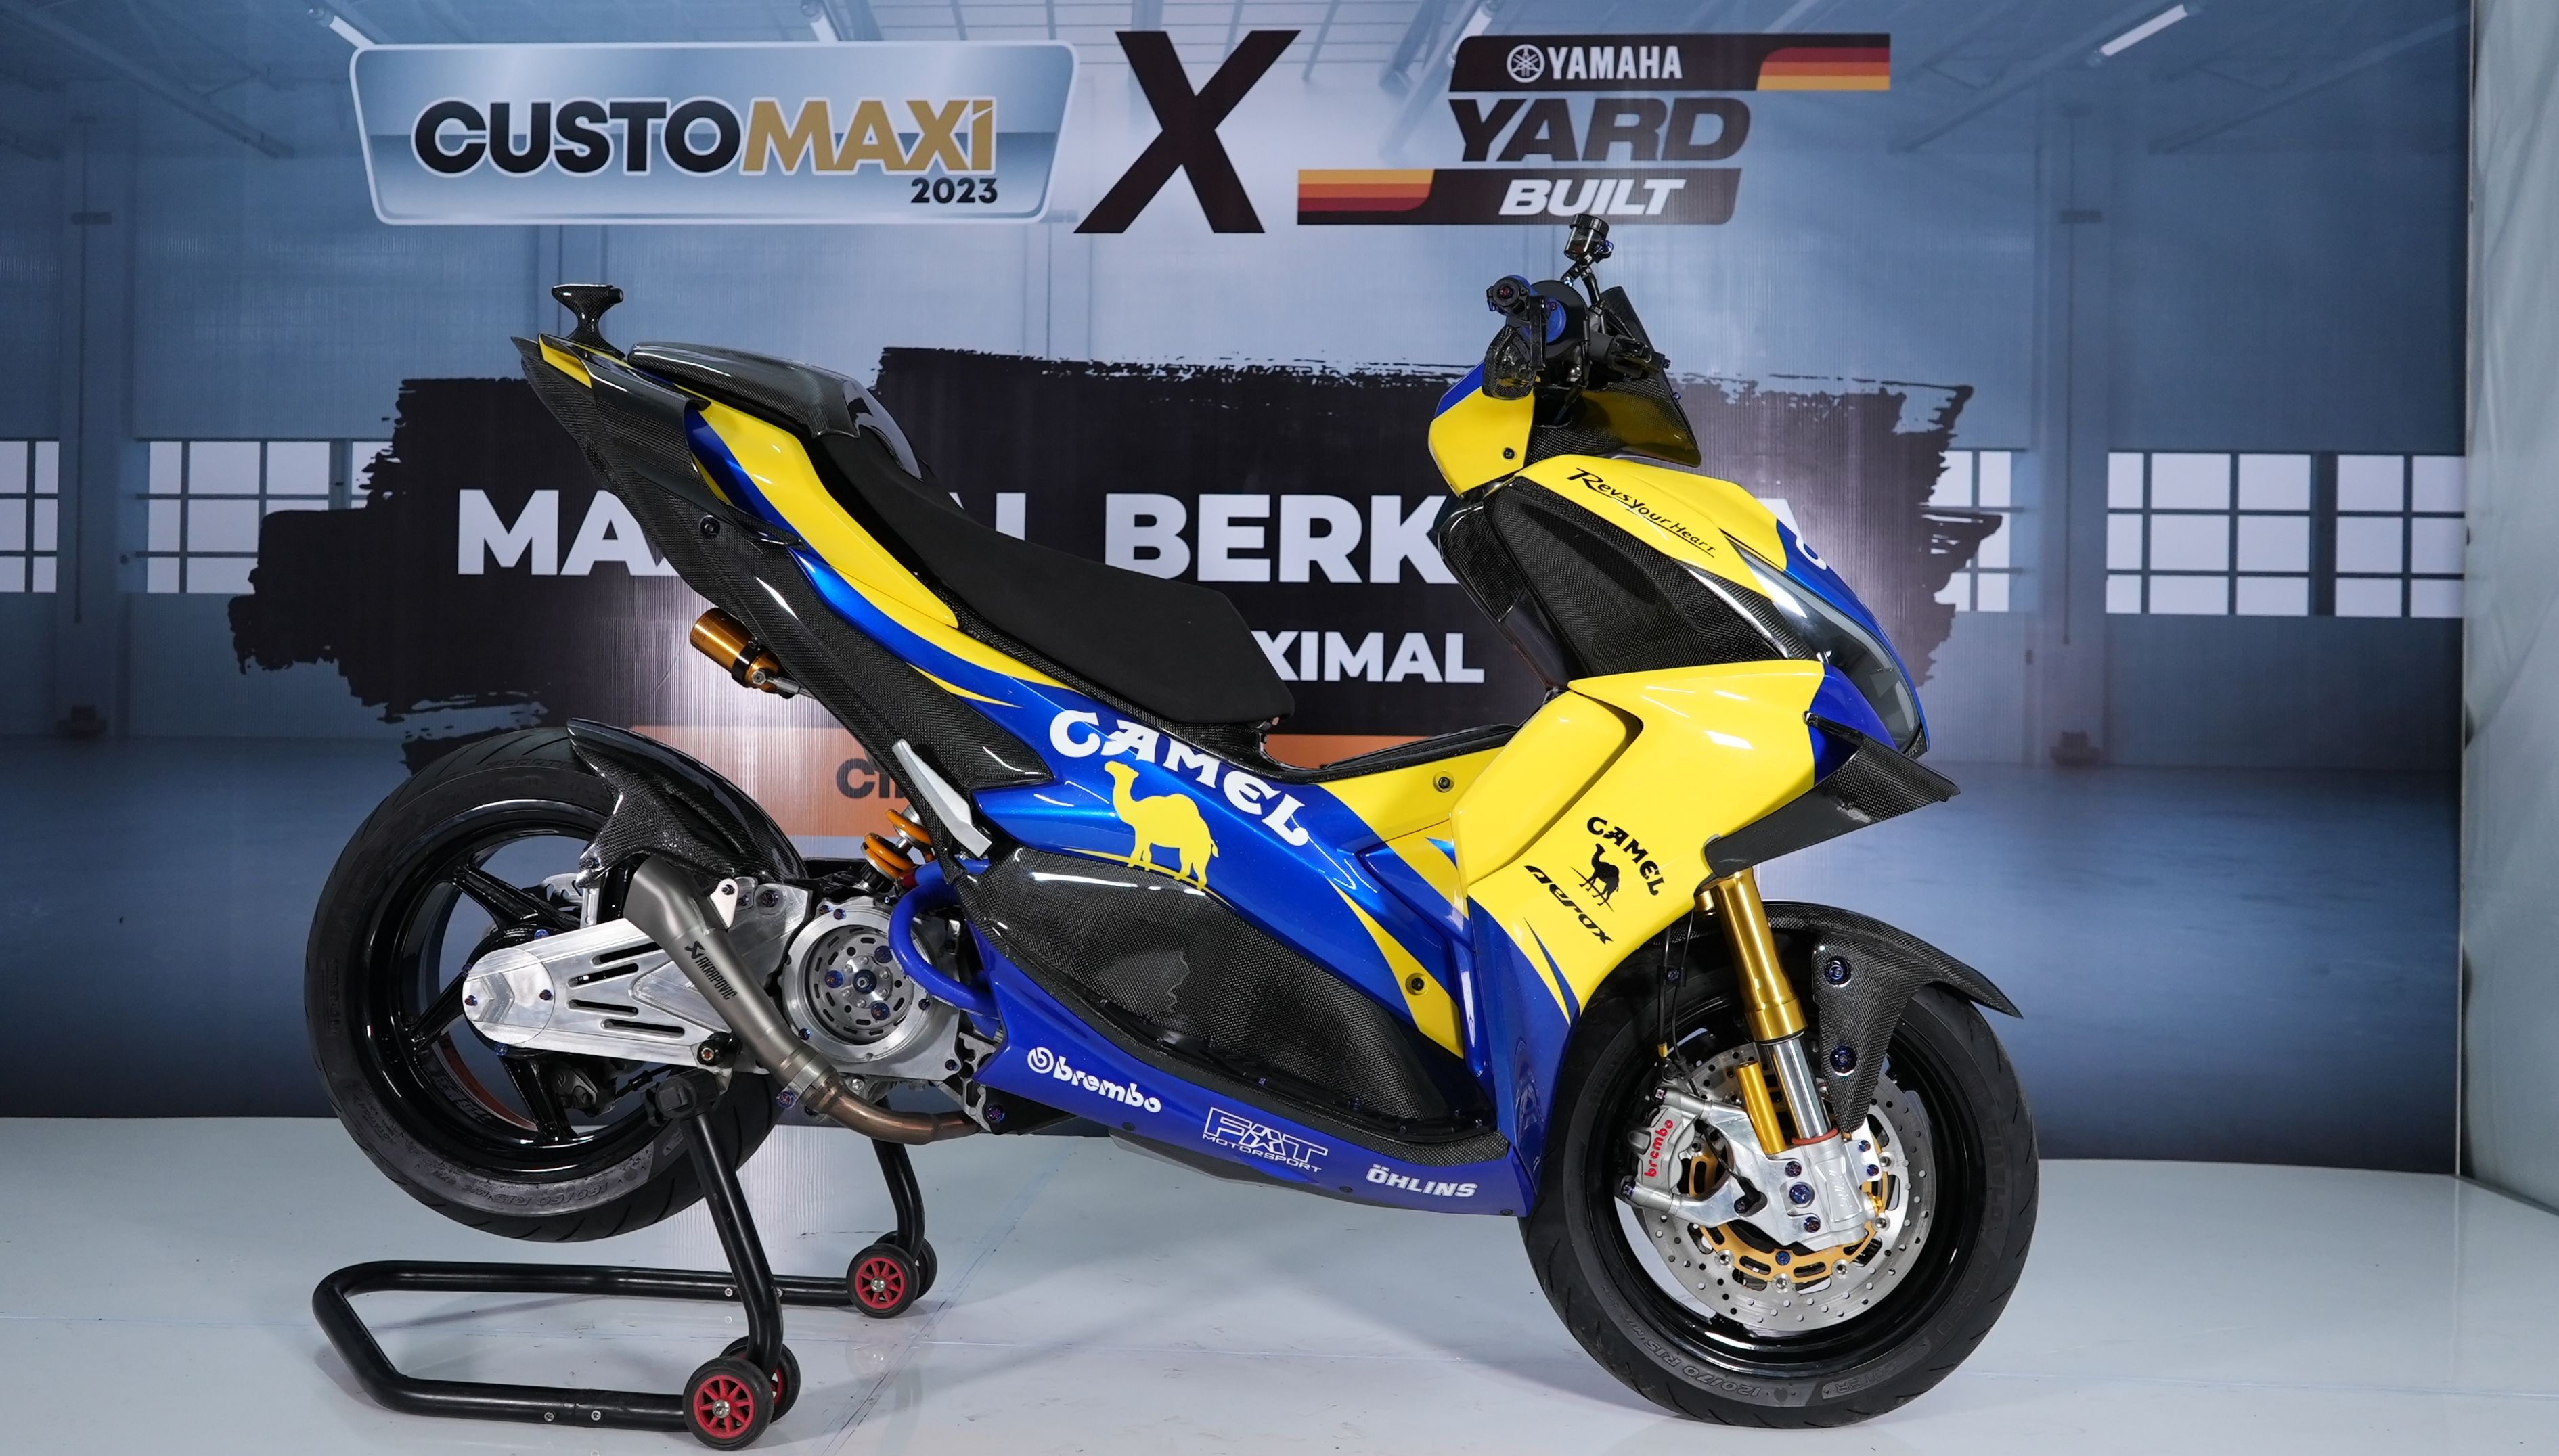 Serasa Motor Valentino Rossi, Ini Sentuhan Modifikasi Pada Yamaha Aerox yang Juarai Customaxi & Yard Built 202